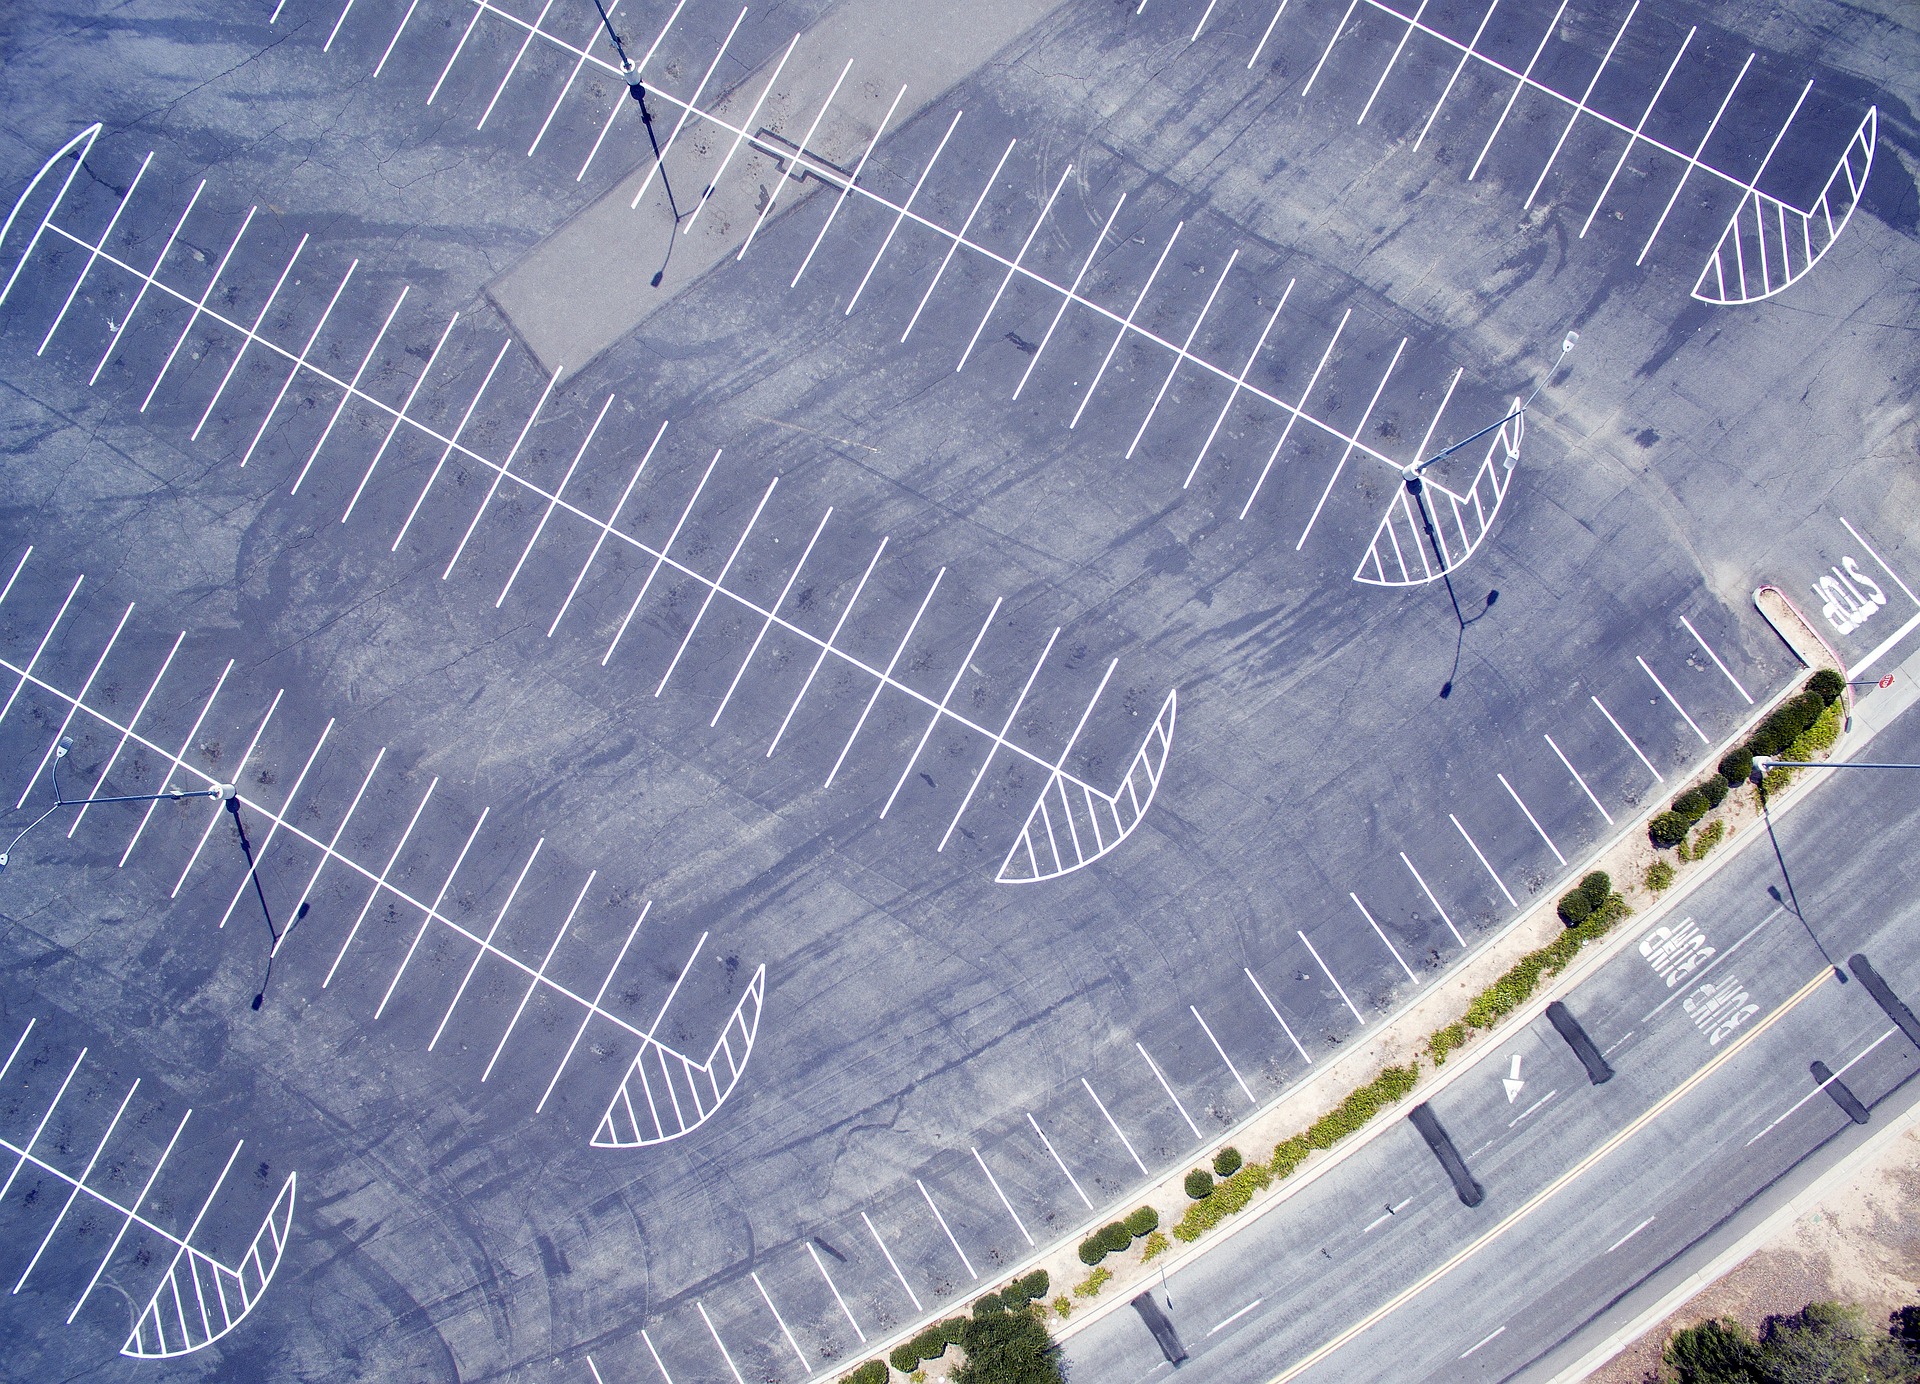 Image of parking lot stripes